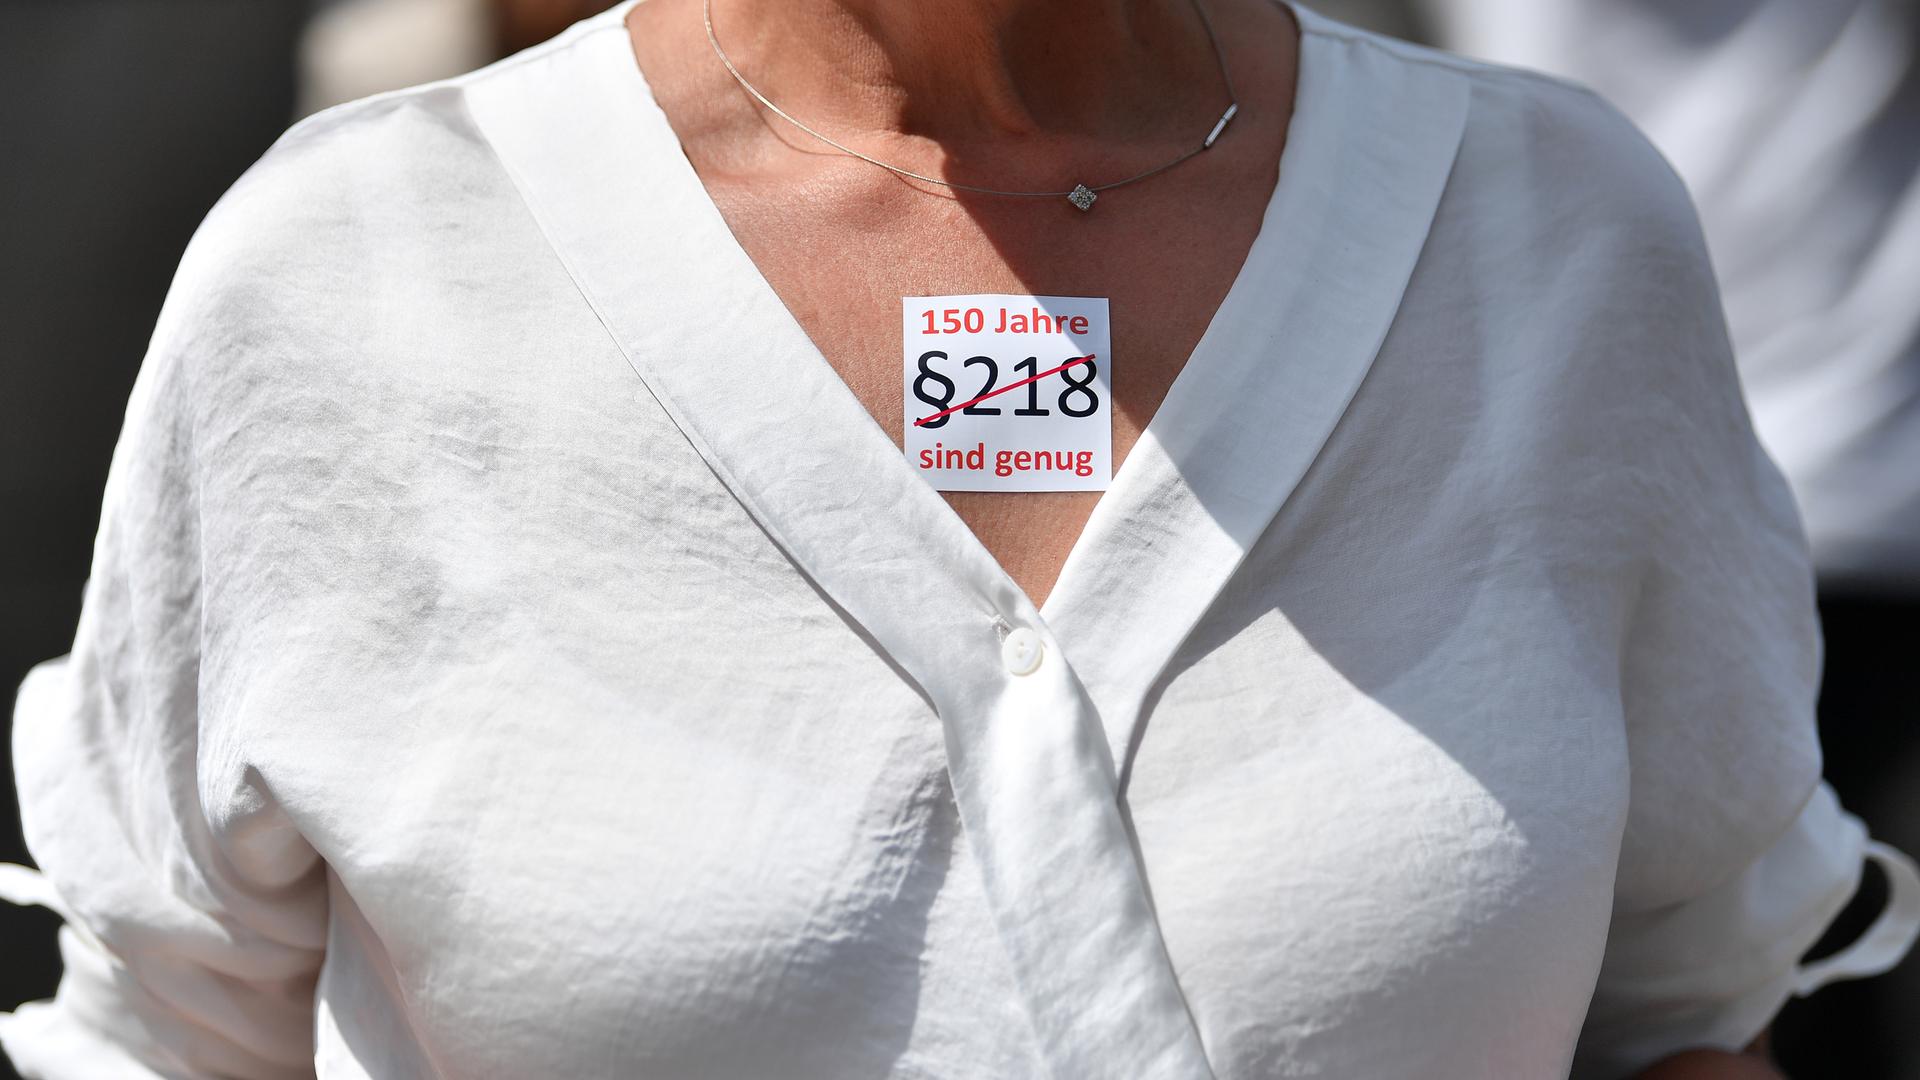 "§218. 150 Jahre sind genug" steht auf dem Sticker einer Demonstrantin, der auf ihrem Dekolleté klebt.